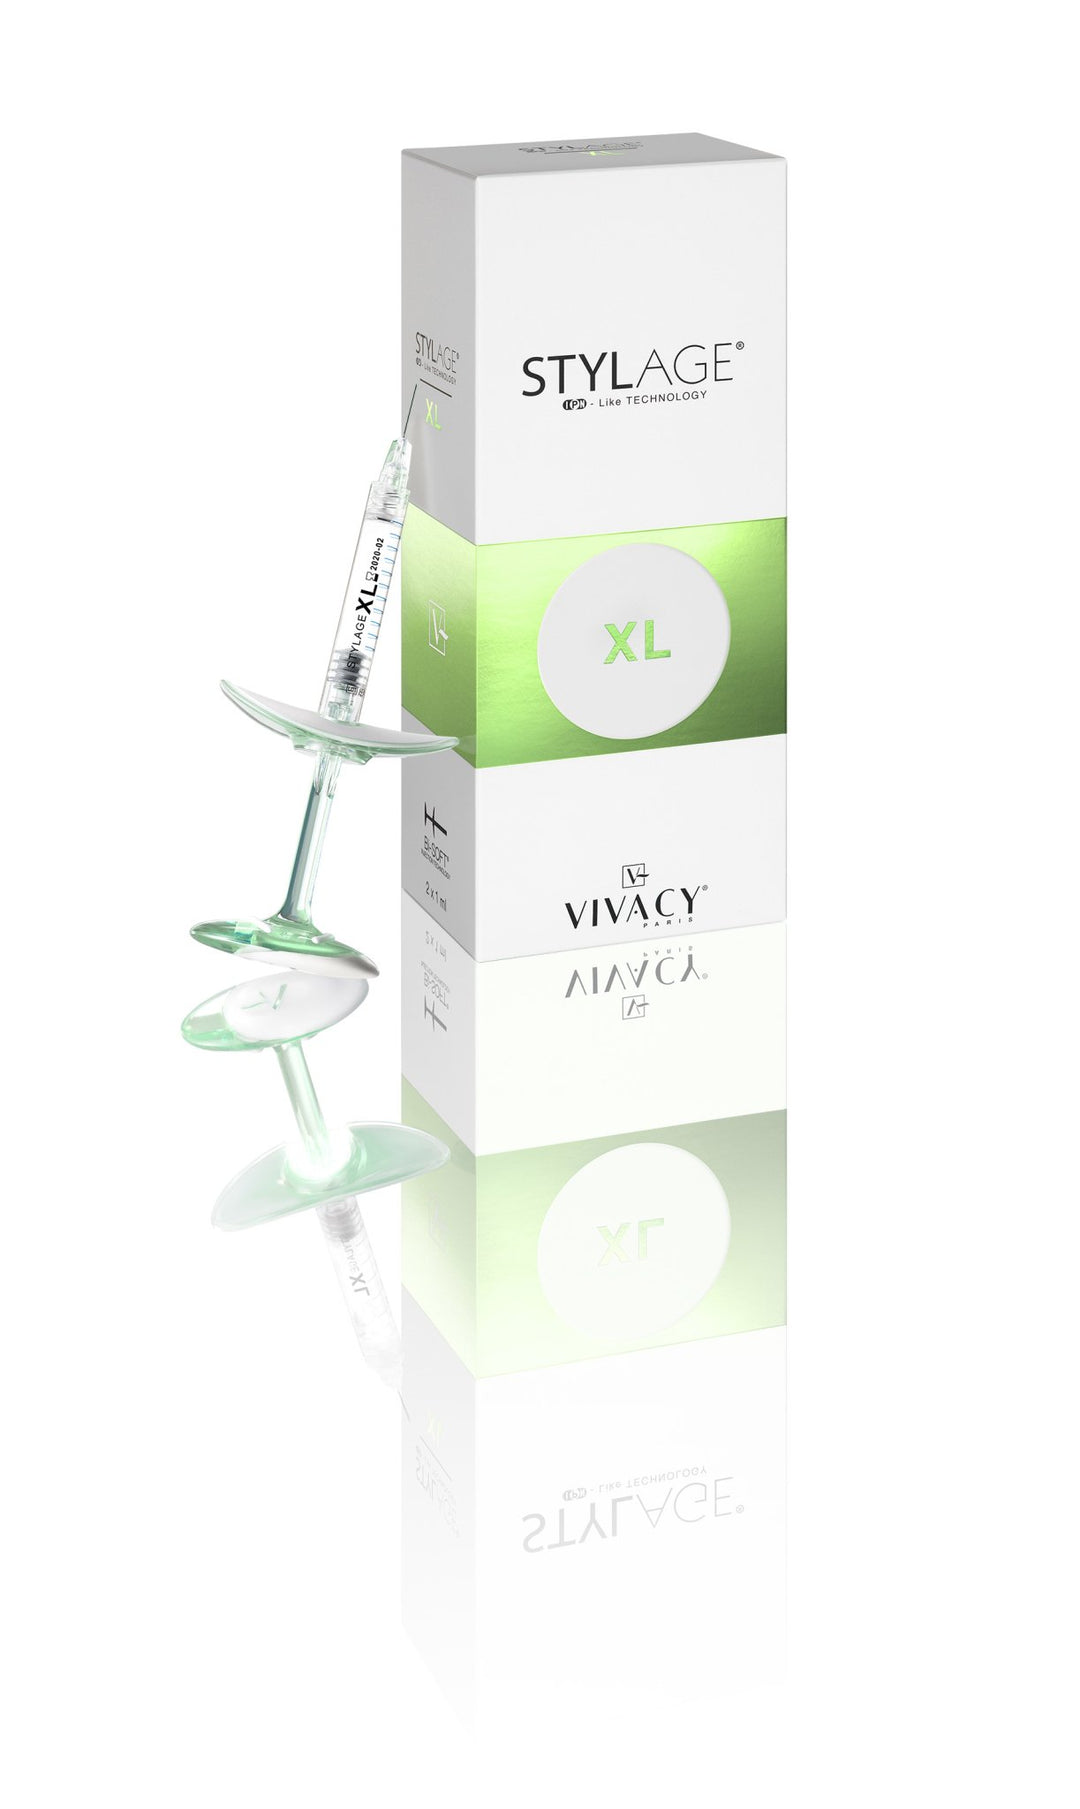 Vivacy - Stylage XL Bi-Soft 2 x 1ml - DANYCARE